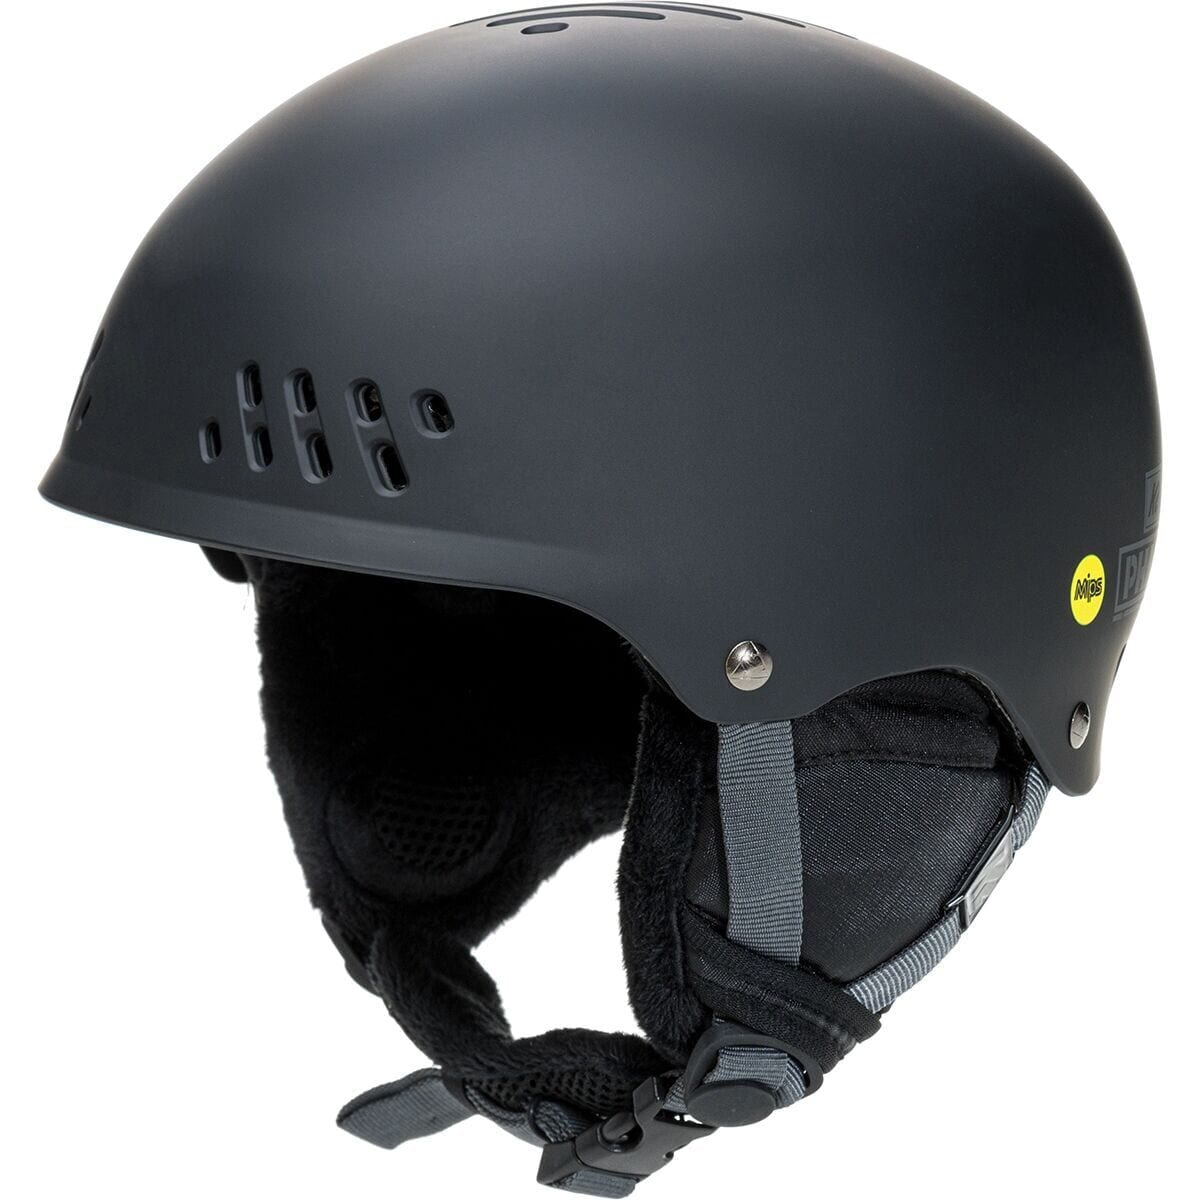 laten we het doen Comorama Uitwerpselen K2 Phase Mips Helmet - Ski